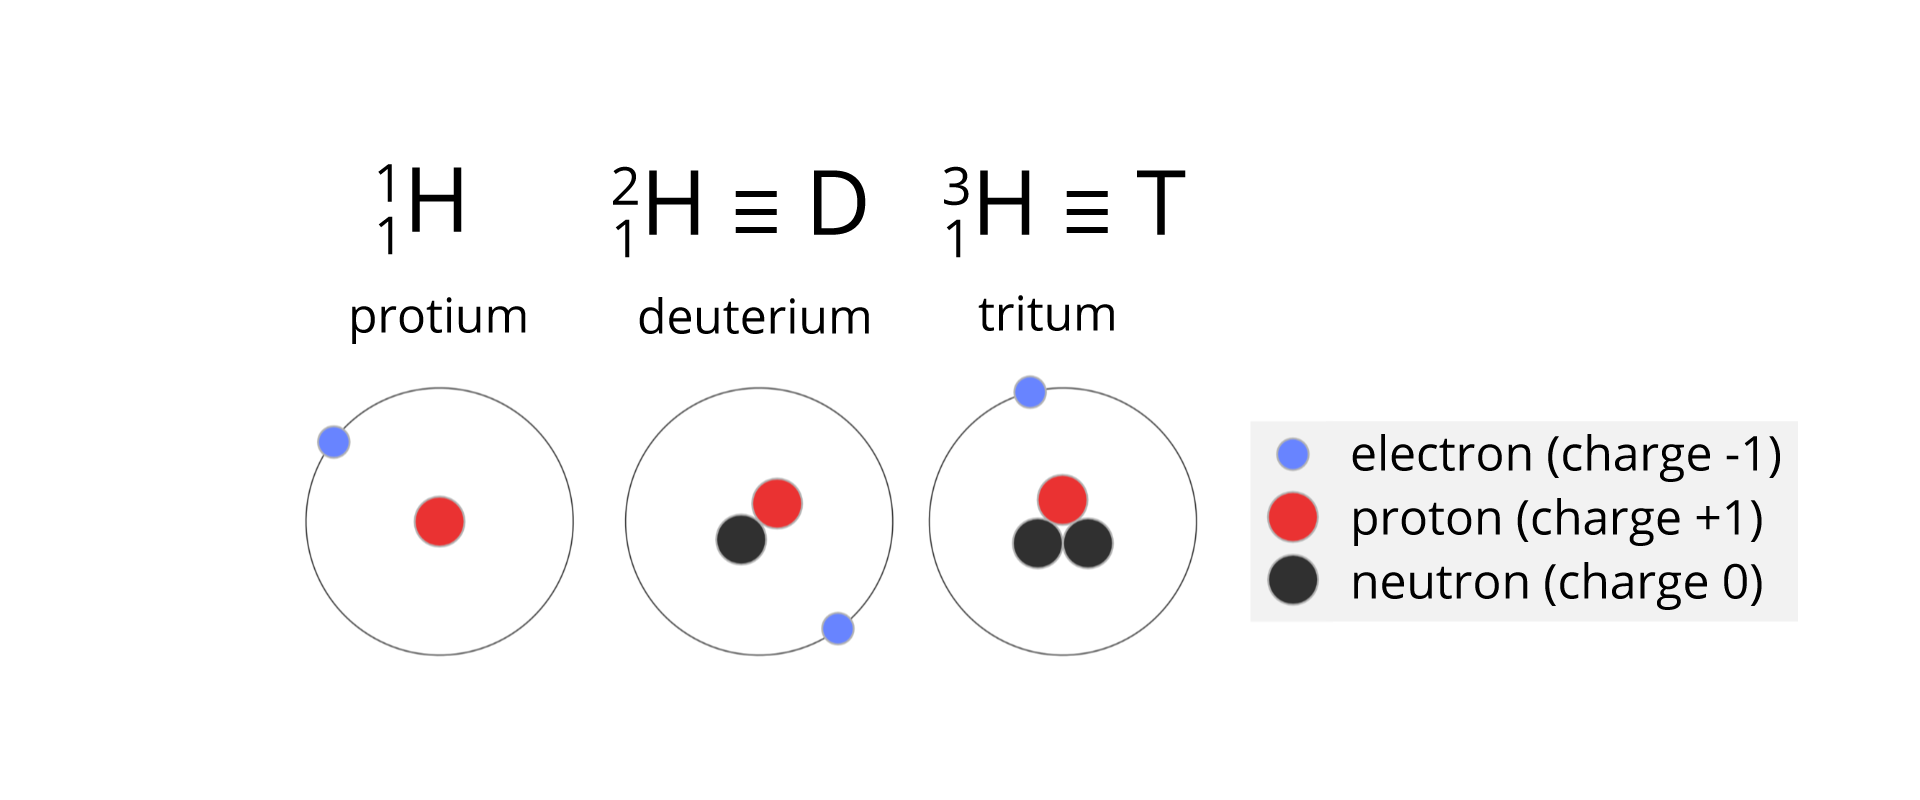 Rysunek przedstawia trzy izotopy wodoru: proton, deuter i tryt. Są one przedstawione jako koła, na których obwodzie zaznaczony jest niebieskim kółkiem elektron, a w środku jądro atomowe. W nim jako kółko czerwone zaznaczona liczba protonów i jako kółko lub kółka czarne liczba neutronów. Nad każdym kołem jest nazwa izotopu oraz symbol. Po lewej proton - koło z jednym protonem, protonium, H, z prawej strony w indeksie górnym 1, w indeksie dolnym 1. Po środku deuter - koło z jednym protonem i jednym neutronem, deuterium, H, z prawej strony w indeksie górnym 2, w indeksie dolnym 1, znak trzy poziome kreski pod sobą D. Po prawej tryt - koło z jednym protonem i dwoma neutronami, tritum, H, z prawej strony w indeksie górnym 2, w indeksie dolnym 1, znak trzy poziome kreski pod sobą T. Po prawej stronie rysunku znajduje się legenda: niebieskie kółko - electron (charge -1), czerwone kółko - proton (charge +1), czarne kółko neutron (charge 0).